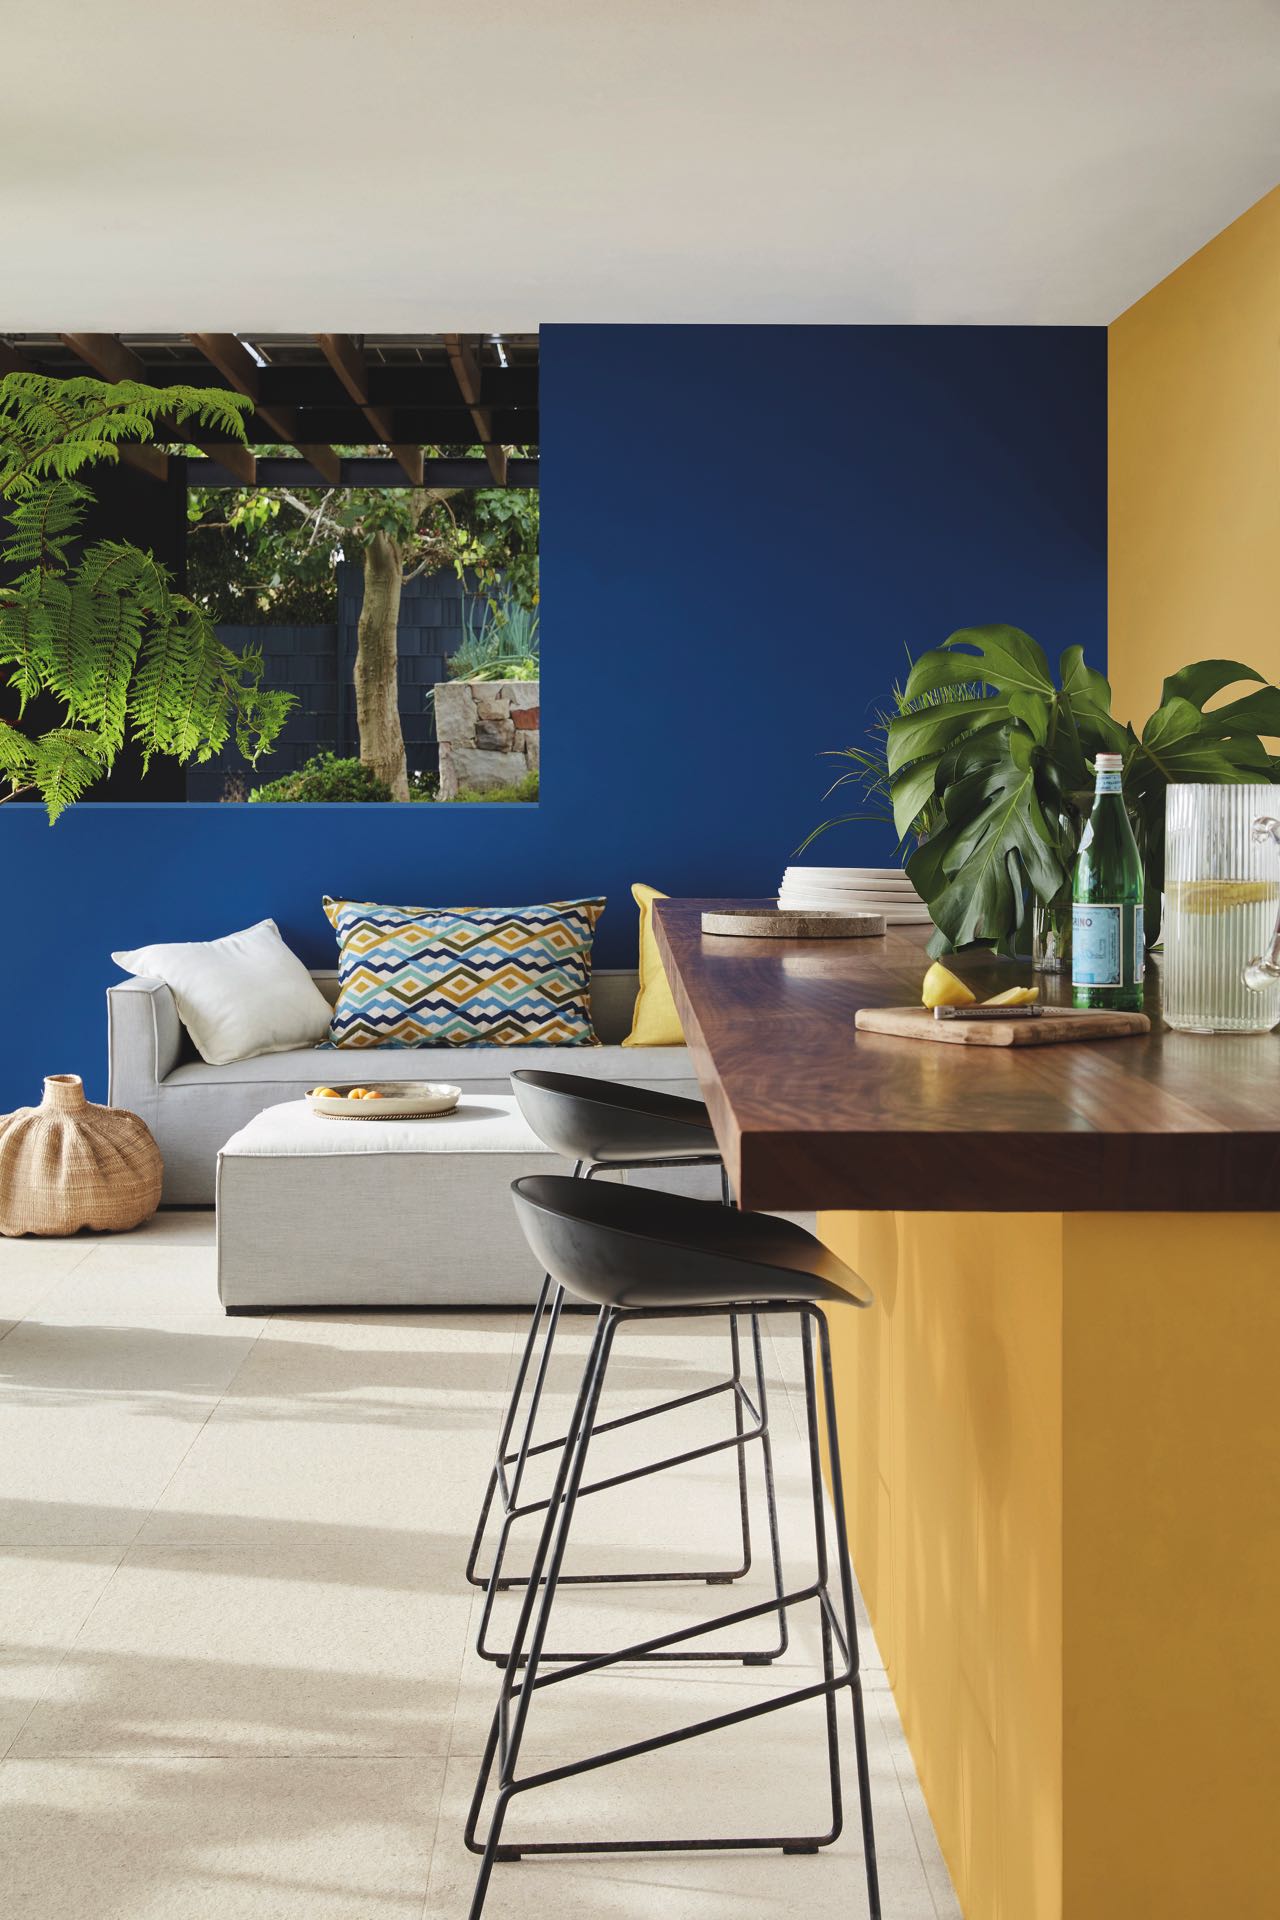 Sommer pur steckt in diesem Raum. Das liegt am wunderbaren Kontrast von Gelb und Royalblau. Ideal für ein Zuhause im Boho-Stil. Die Farben sind von Little Greene und auch für den Outdoor-Bereich geeignet.